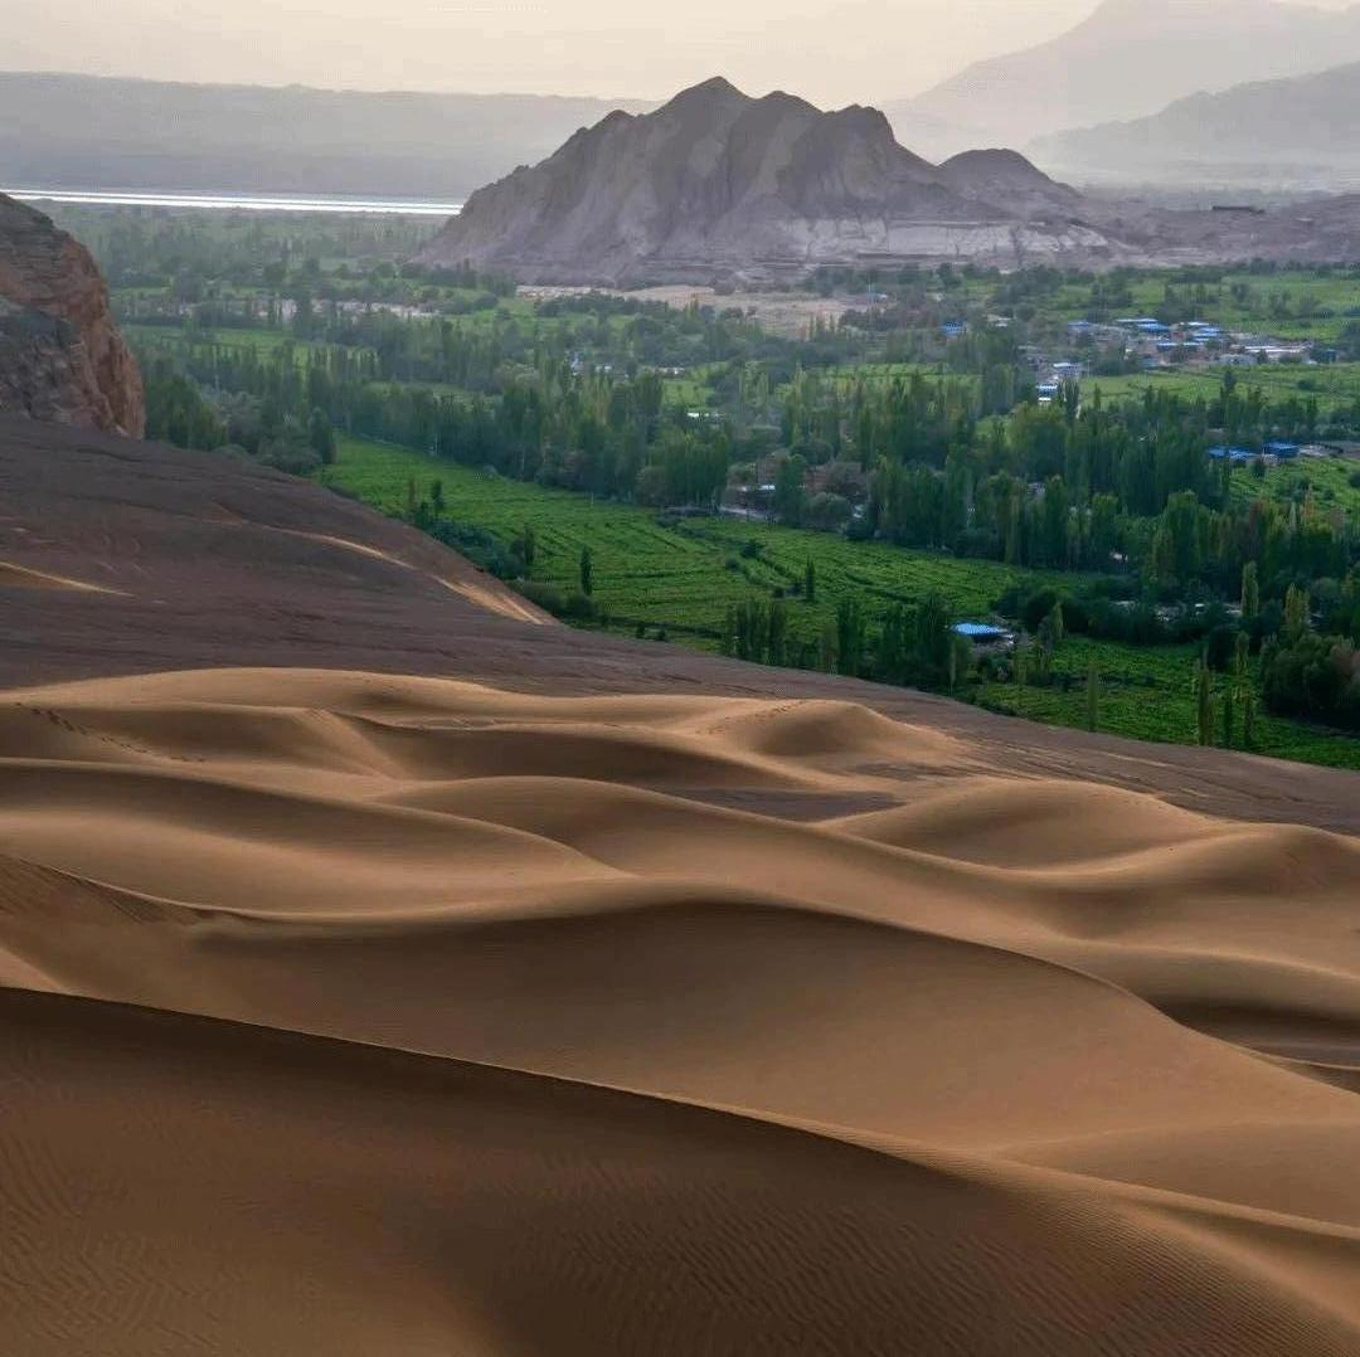 【携程攻略】鄯善库木塔格沙漠景点,库姆塔格沙漠位于新疆东部、鄯善县以南，与鄯善老城东环路南段相连，…